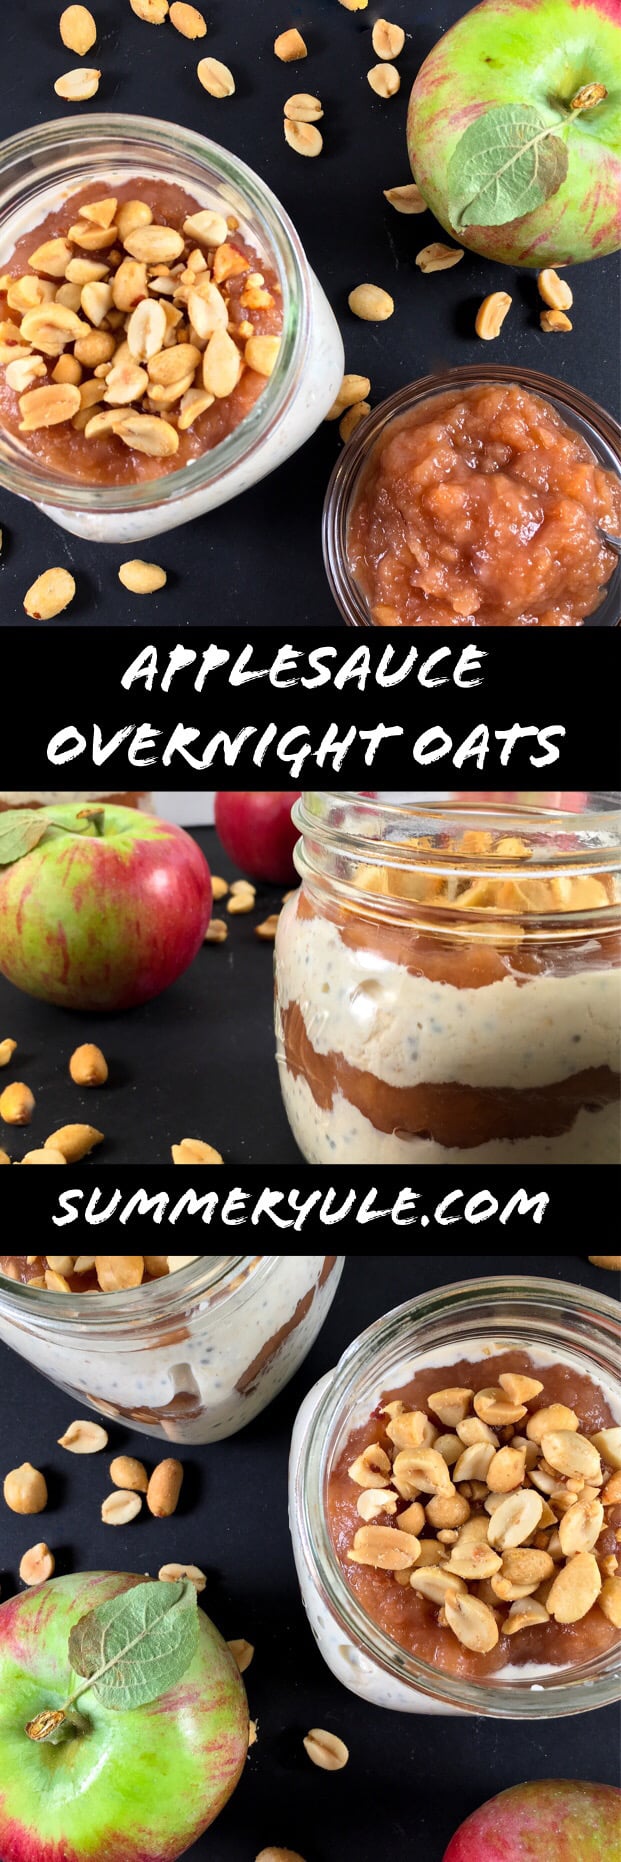 Applesauce overnight oatmeal